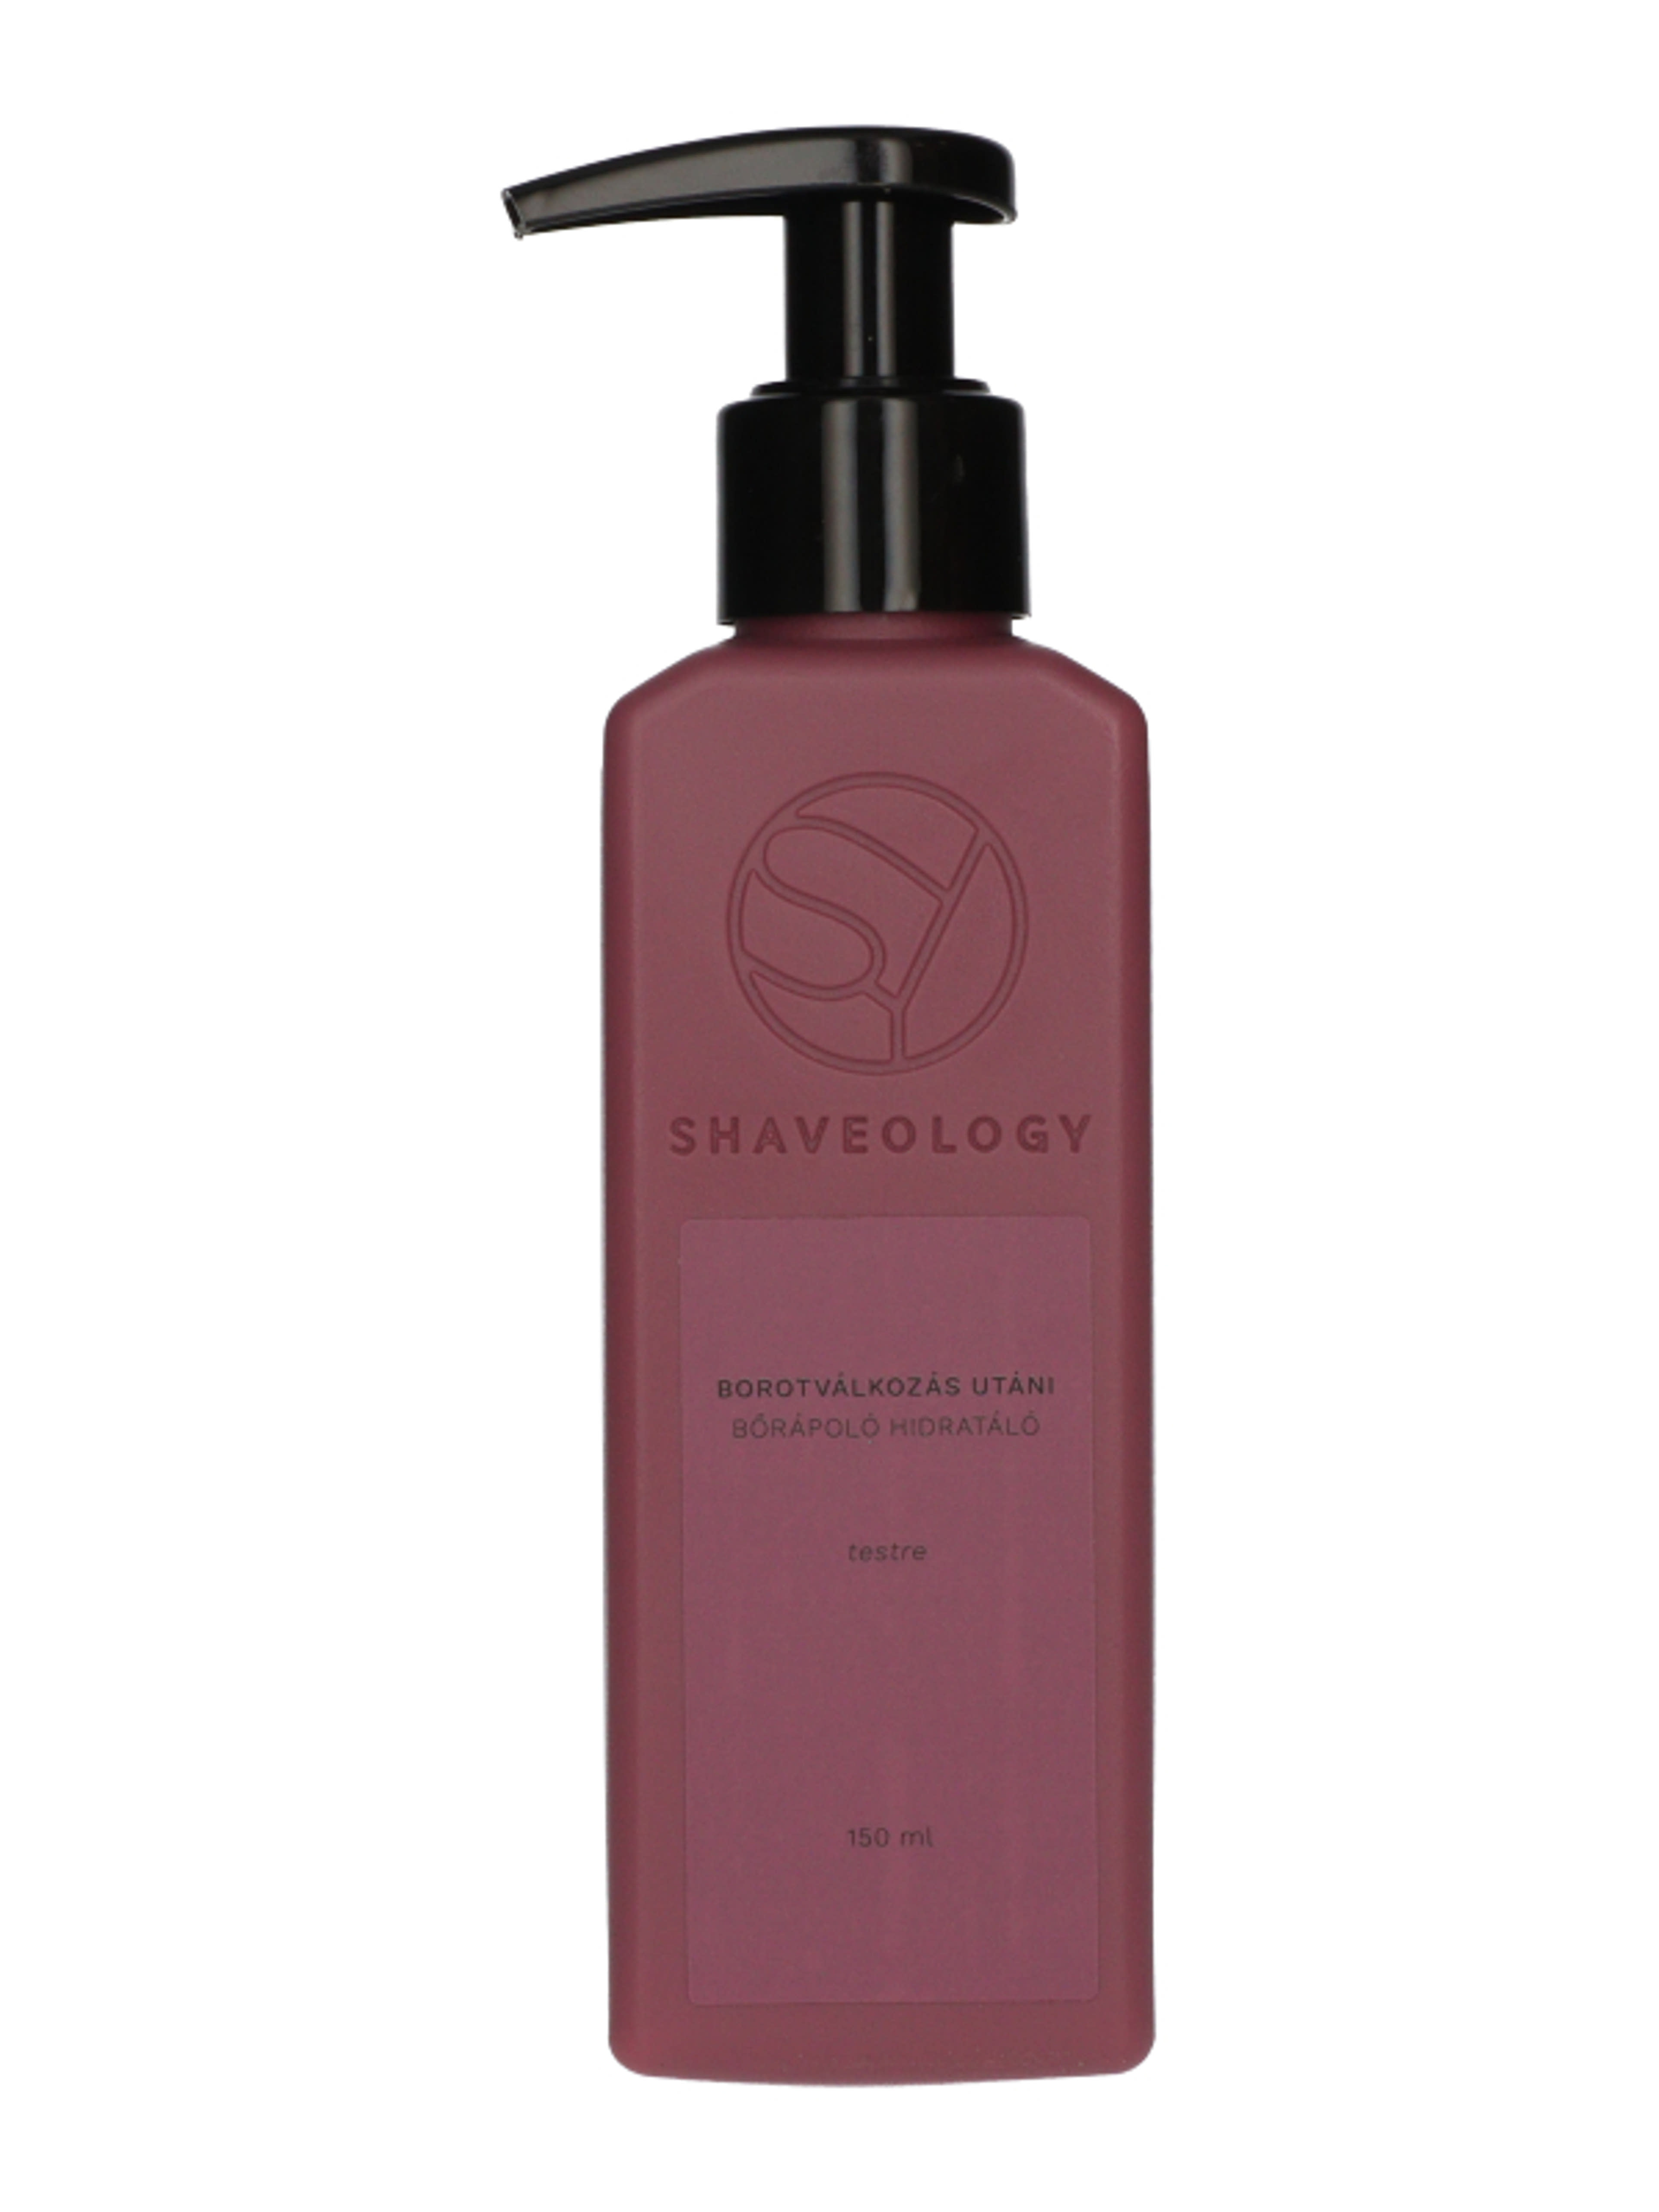 Shaveology borotválkozás utáni bőrápoló - 150 ml